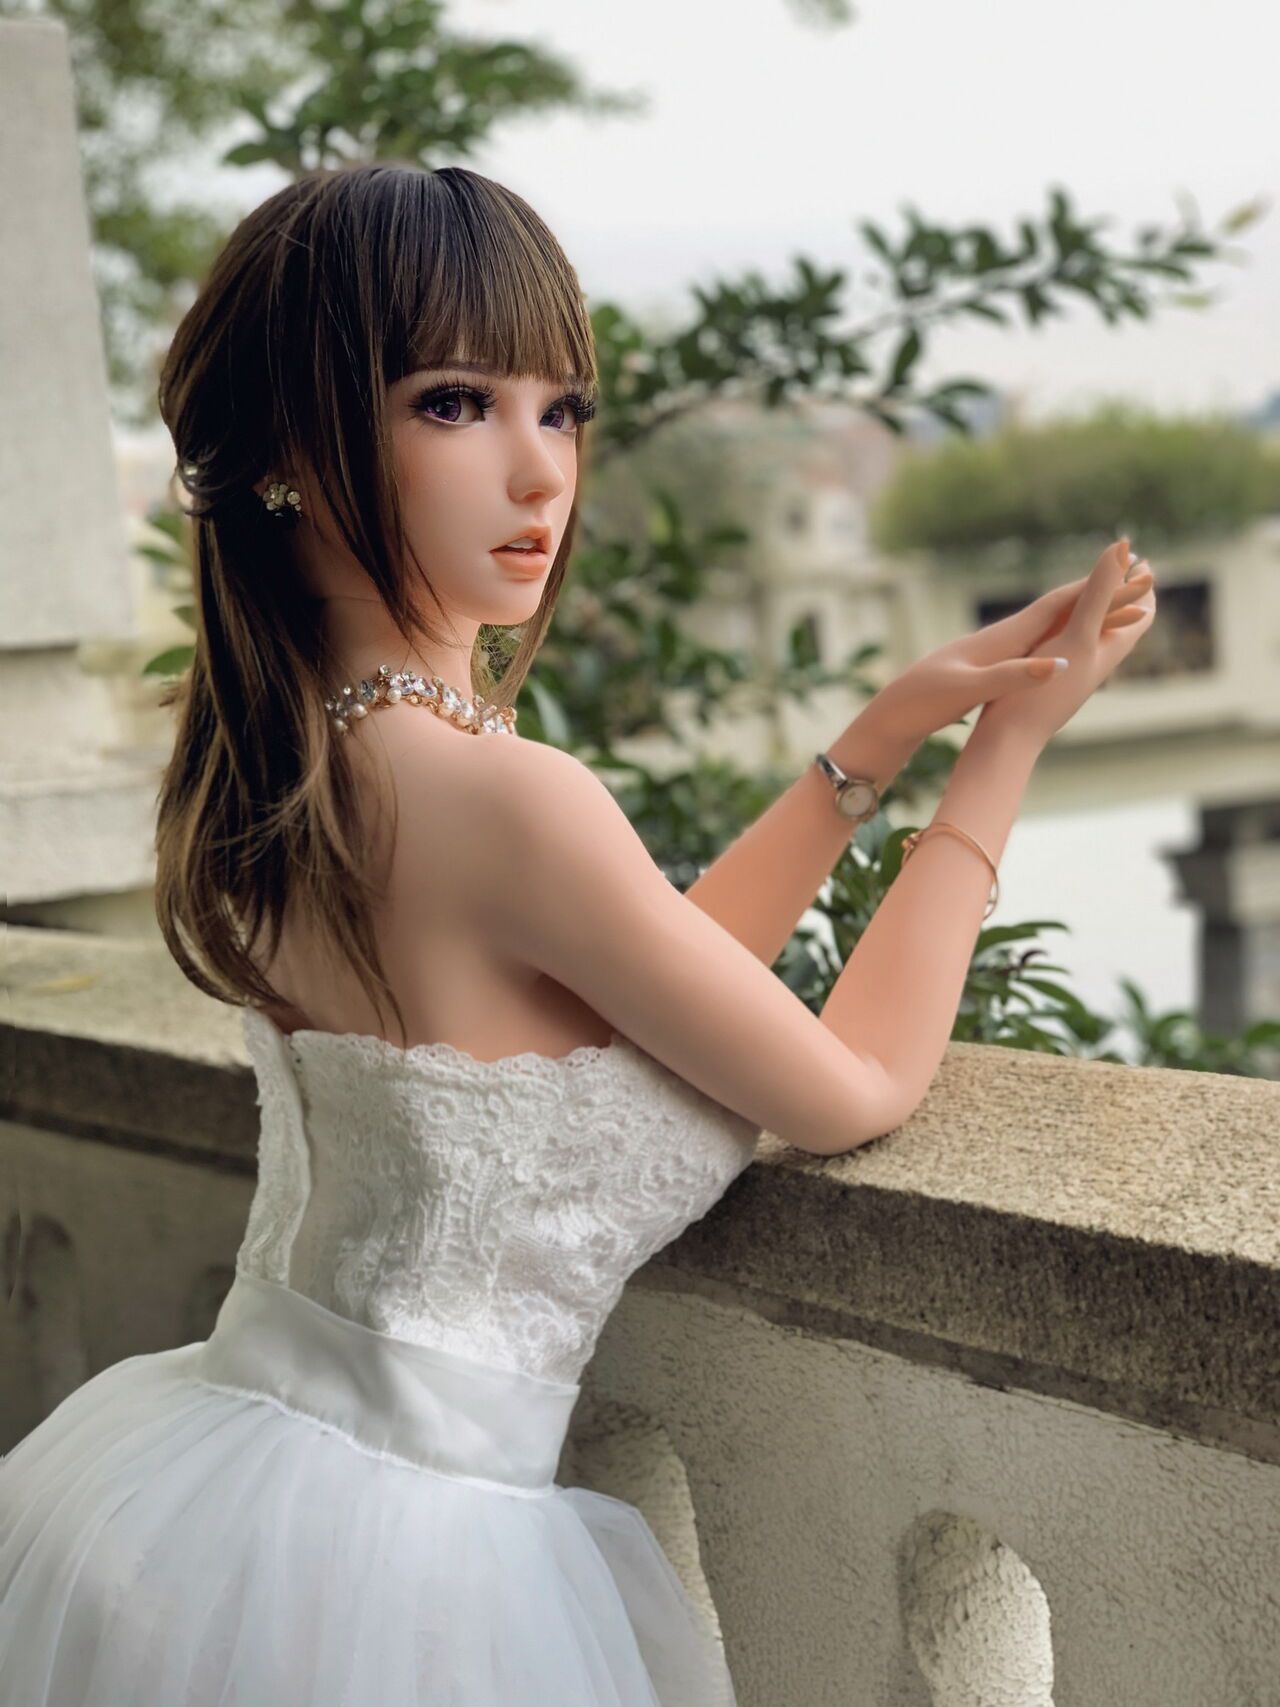 150CM HB031 Kurai Sakura-Bride in bud, to be married! by QIN 23